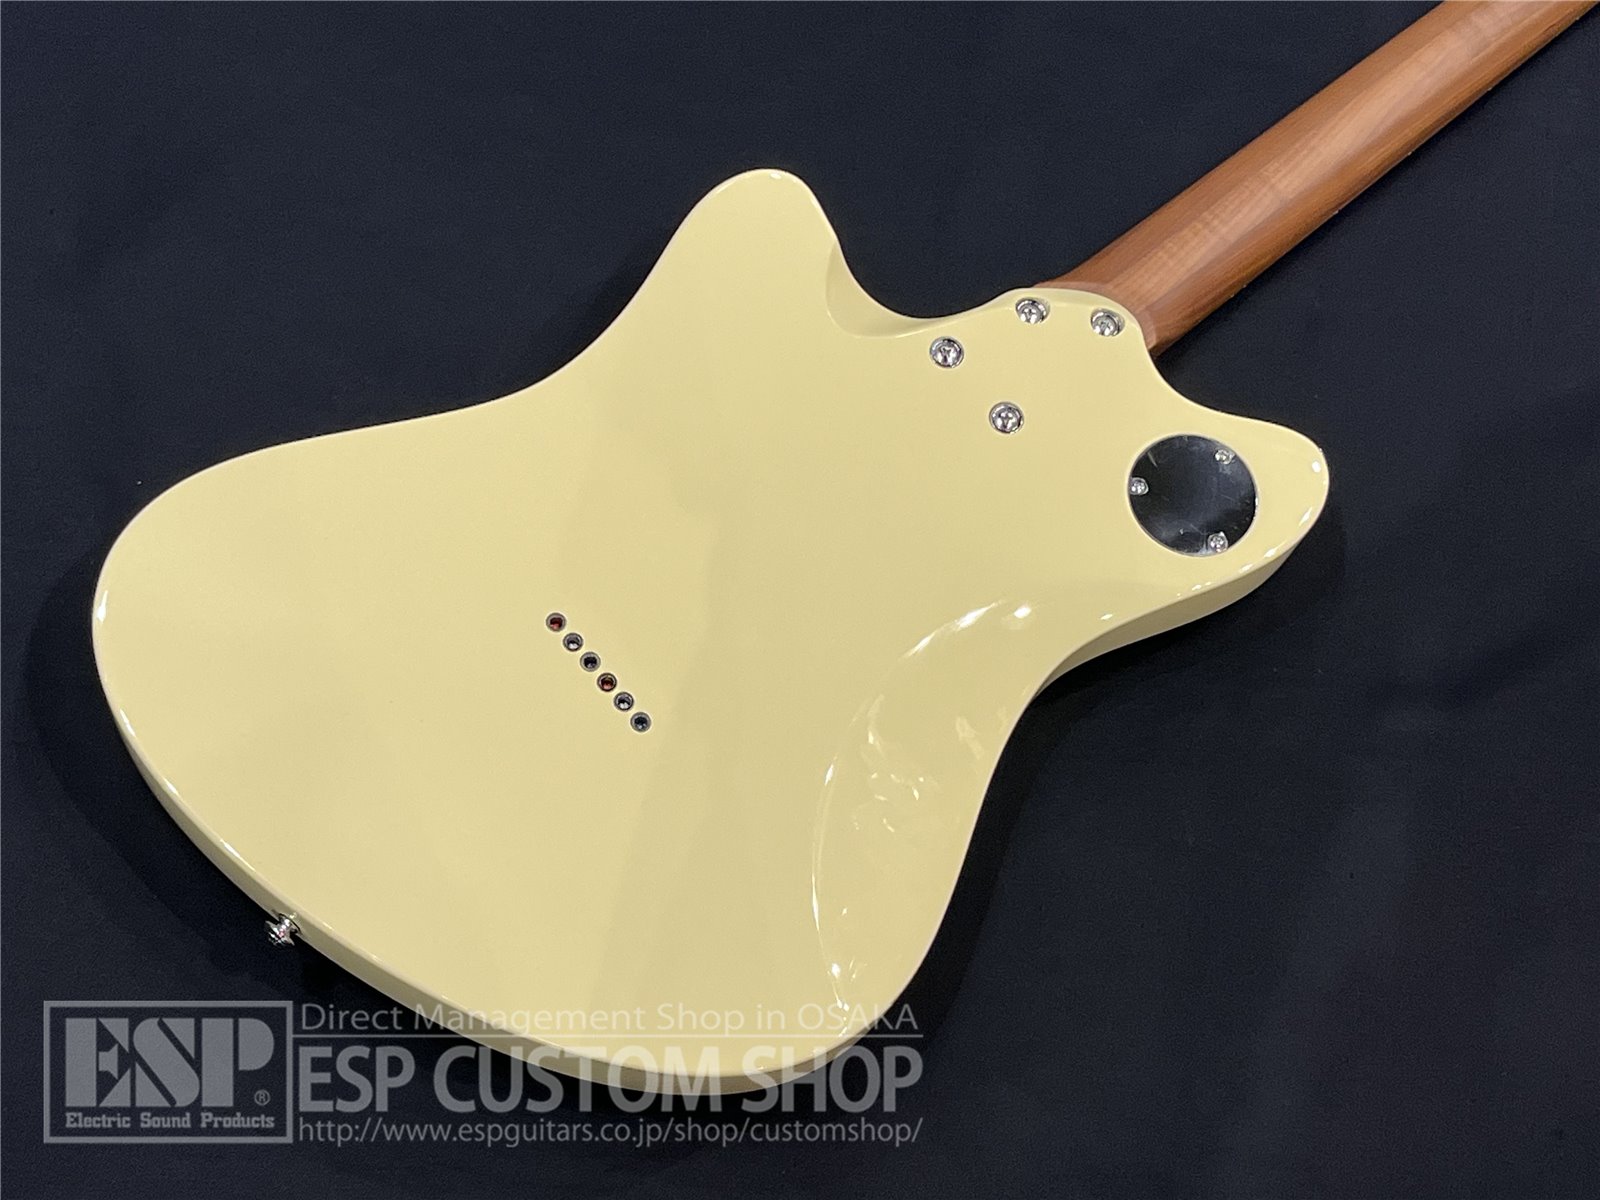 【即納可能】Balaguer Guitars Espada Standard Gloss / Vintage White 大阪店